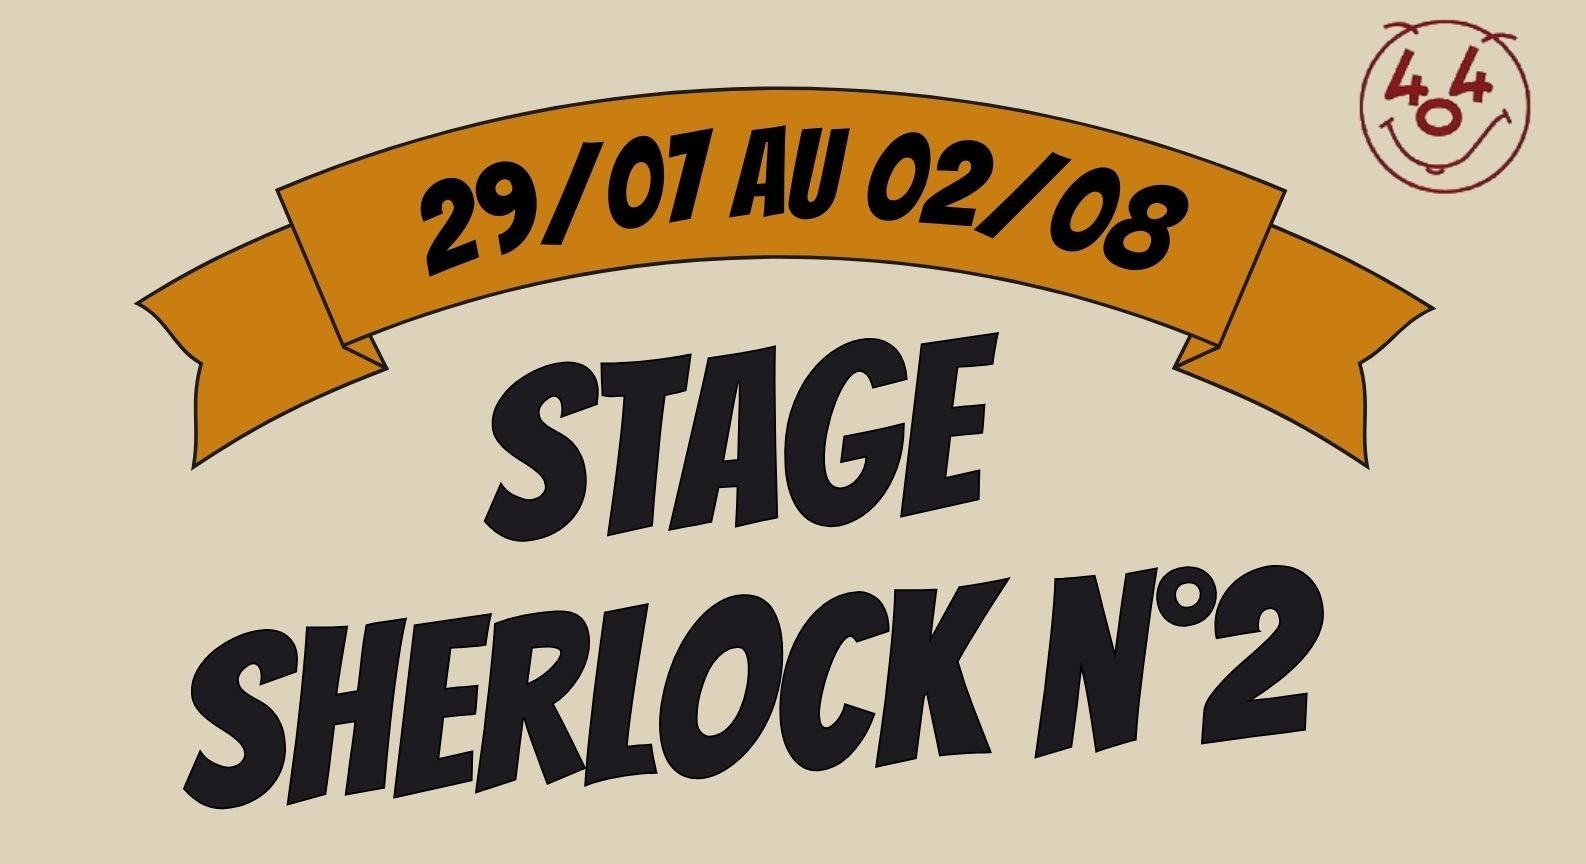 Stage Sherlock n°2